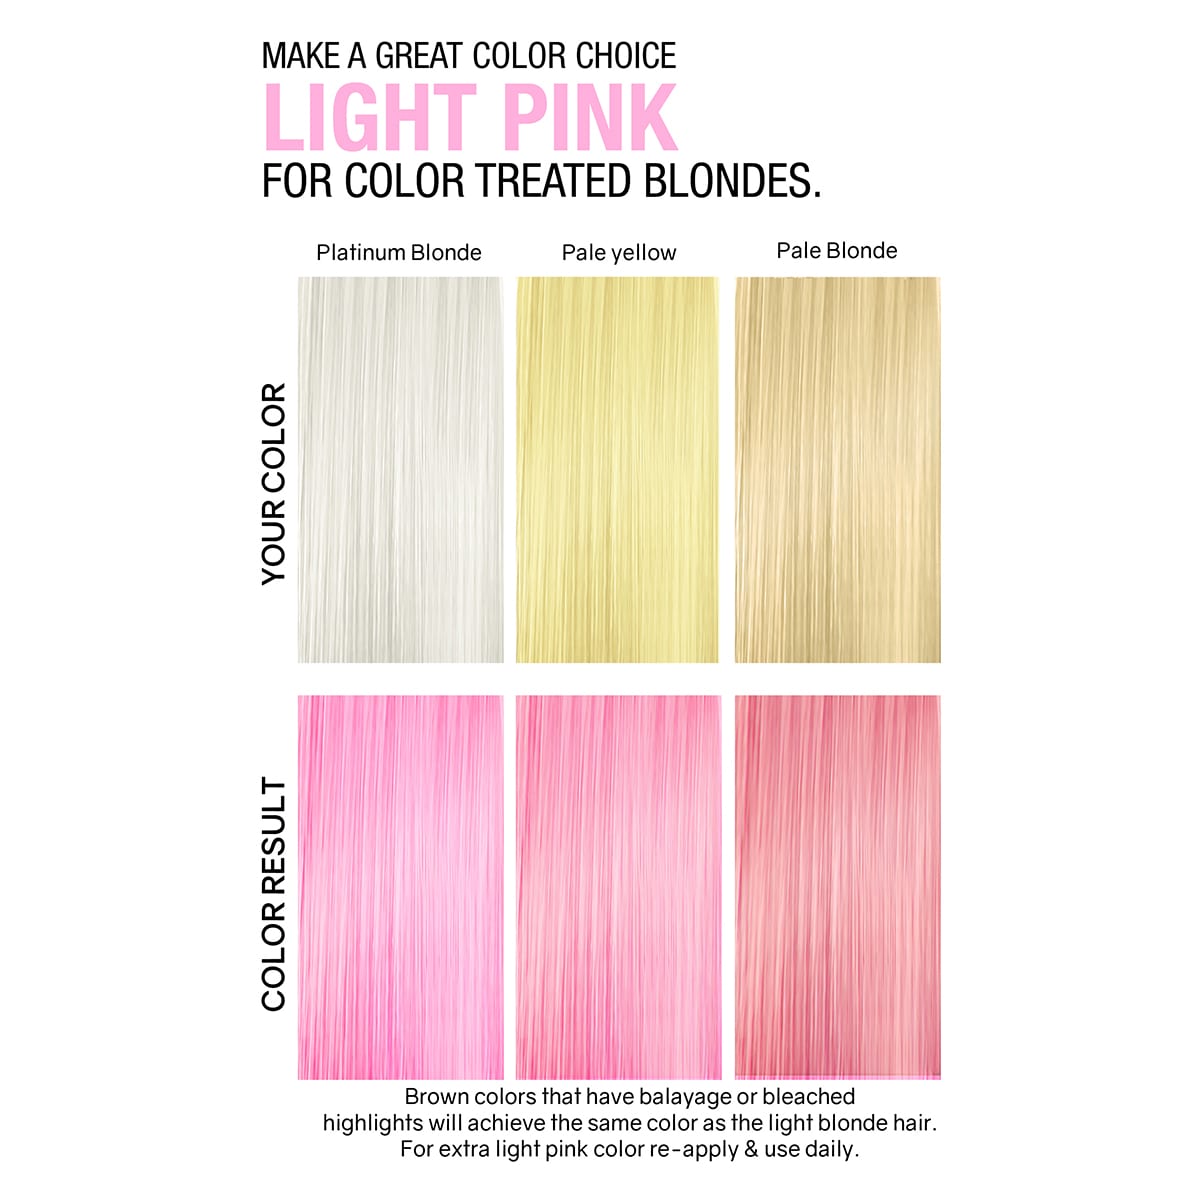 Celeb Luxury Pastel Light Pink Colorwash - 8.25 oz (Buy 3 Get 1 Free Mix & Match)